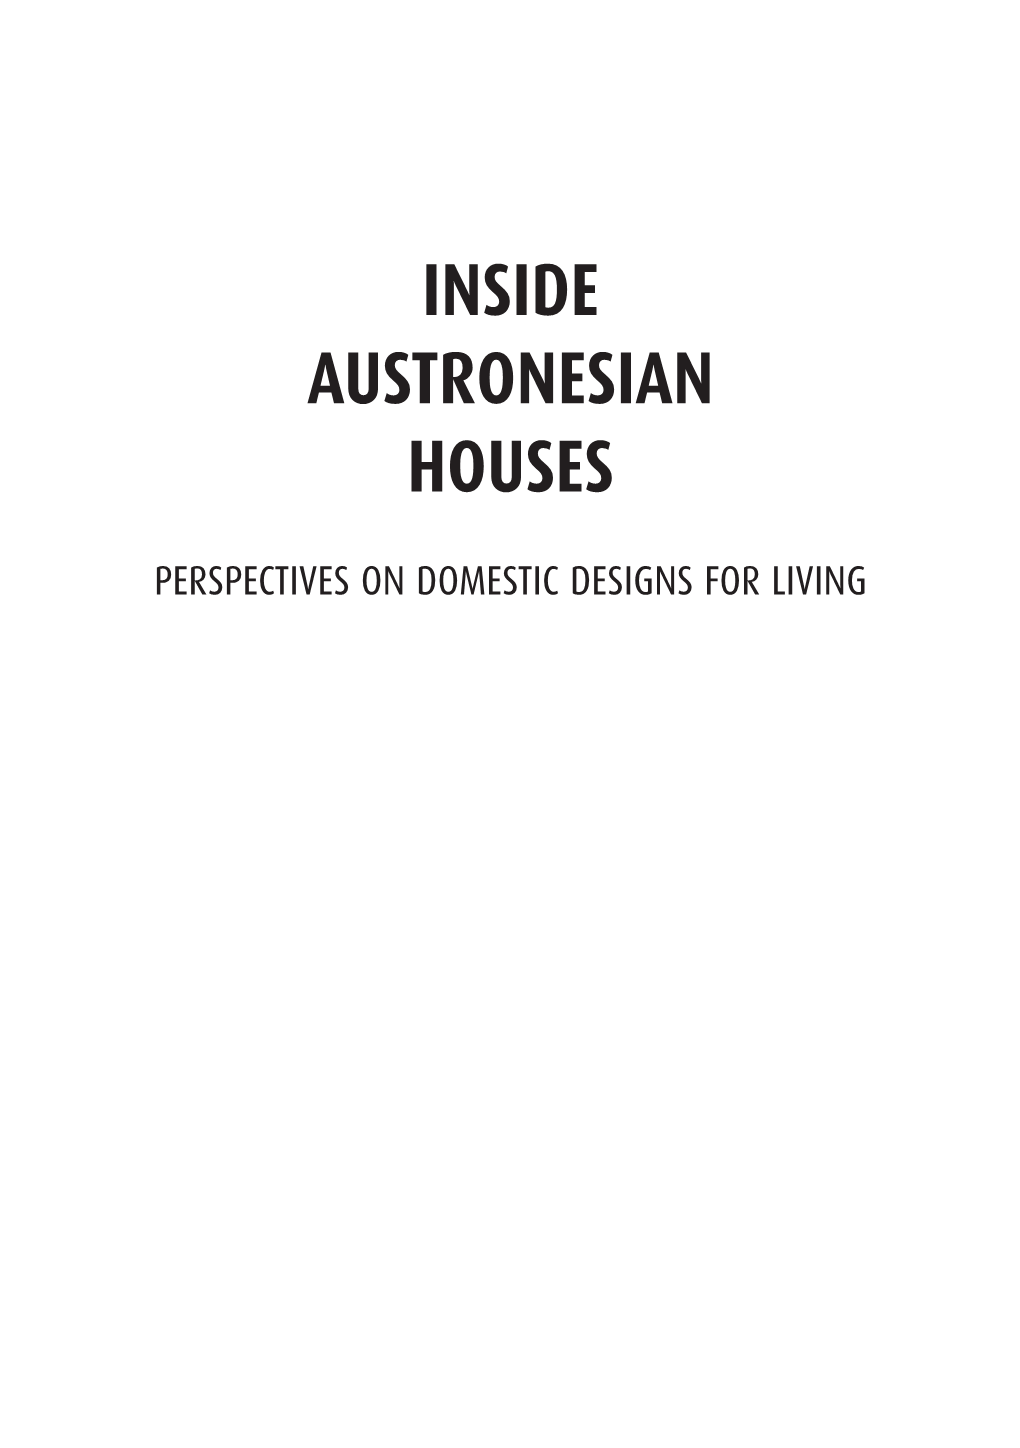 Inside Austronesian Houses